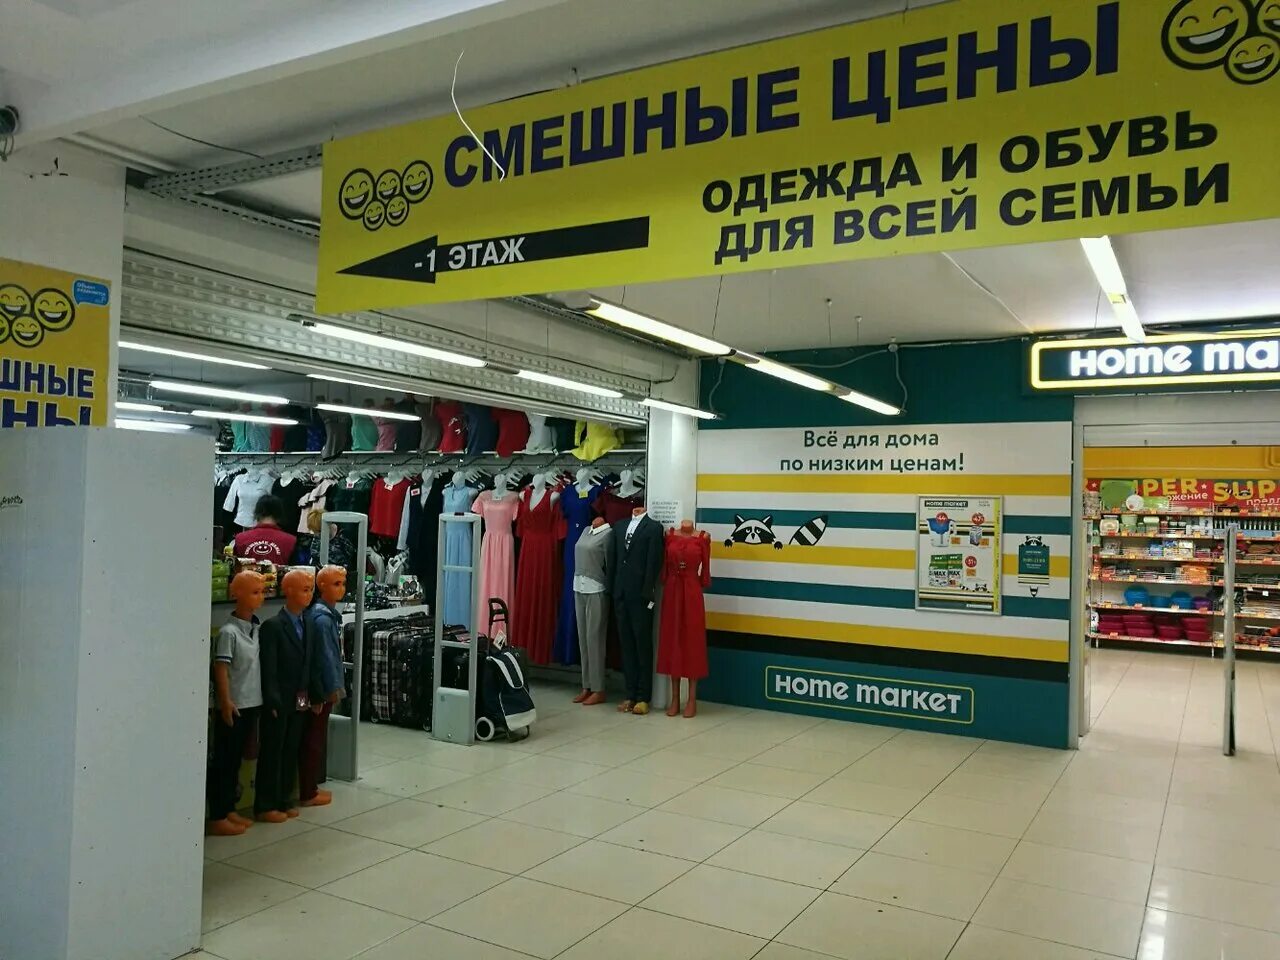 Смешные цены в москве рядом со мной. Магазин одежды рядом. Смешные цены. Смешные магазины в Москве. Смешные цены одежда.